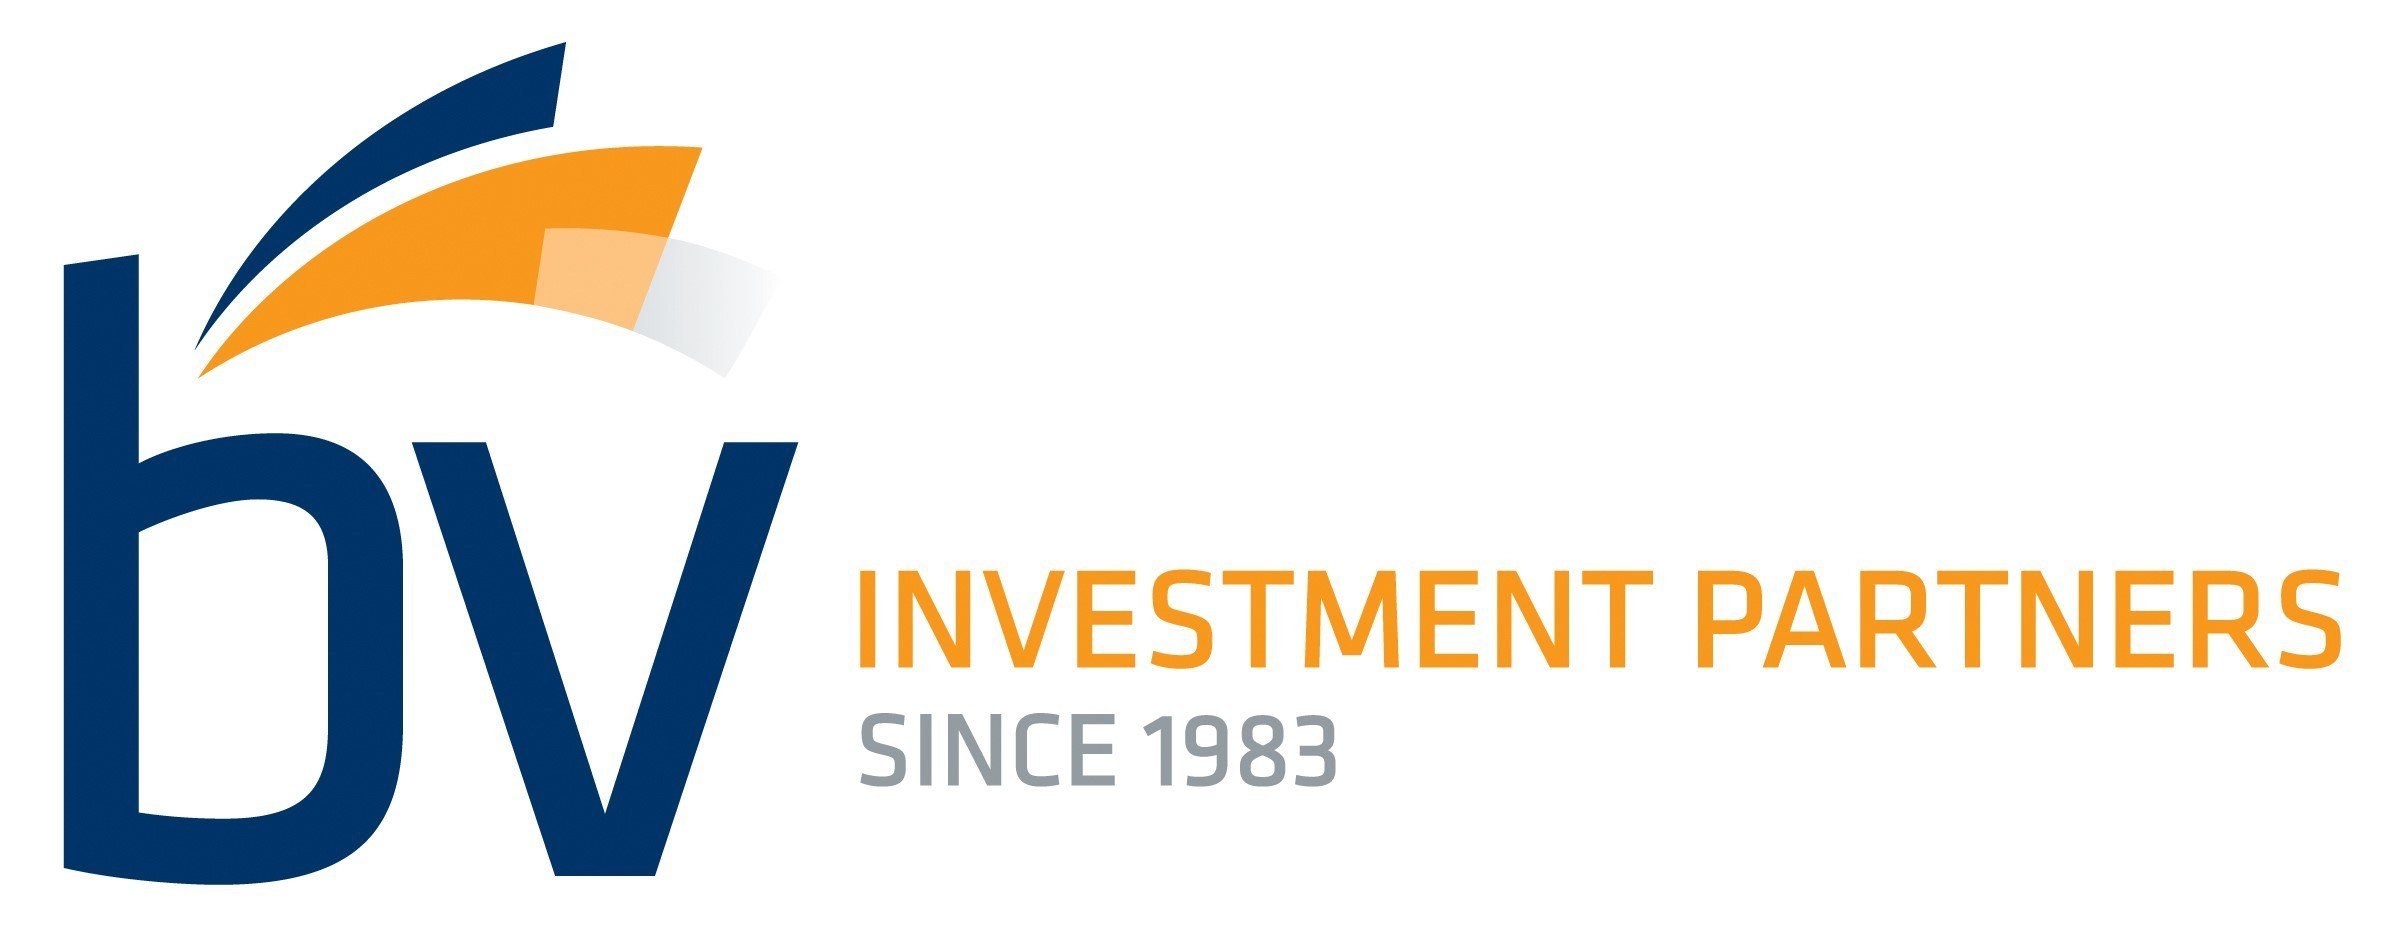 BV_Investment_Partners_Logo.jpg